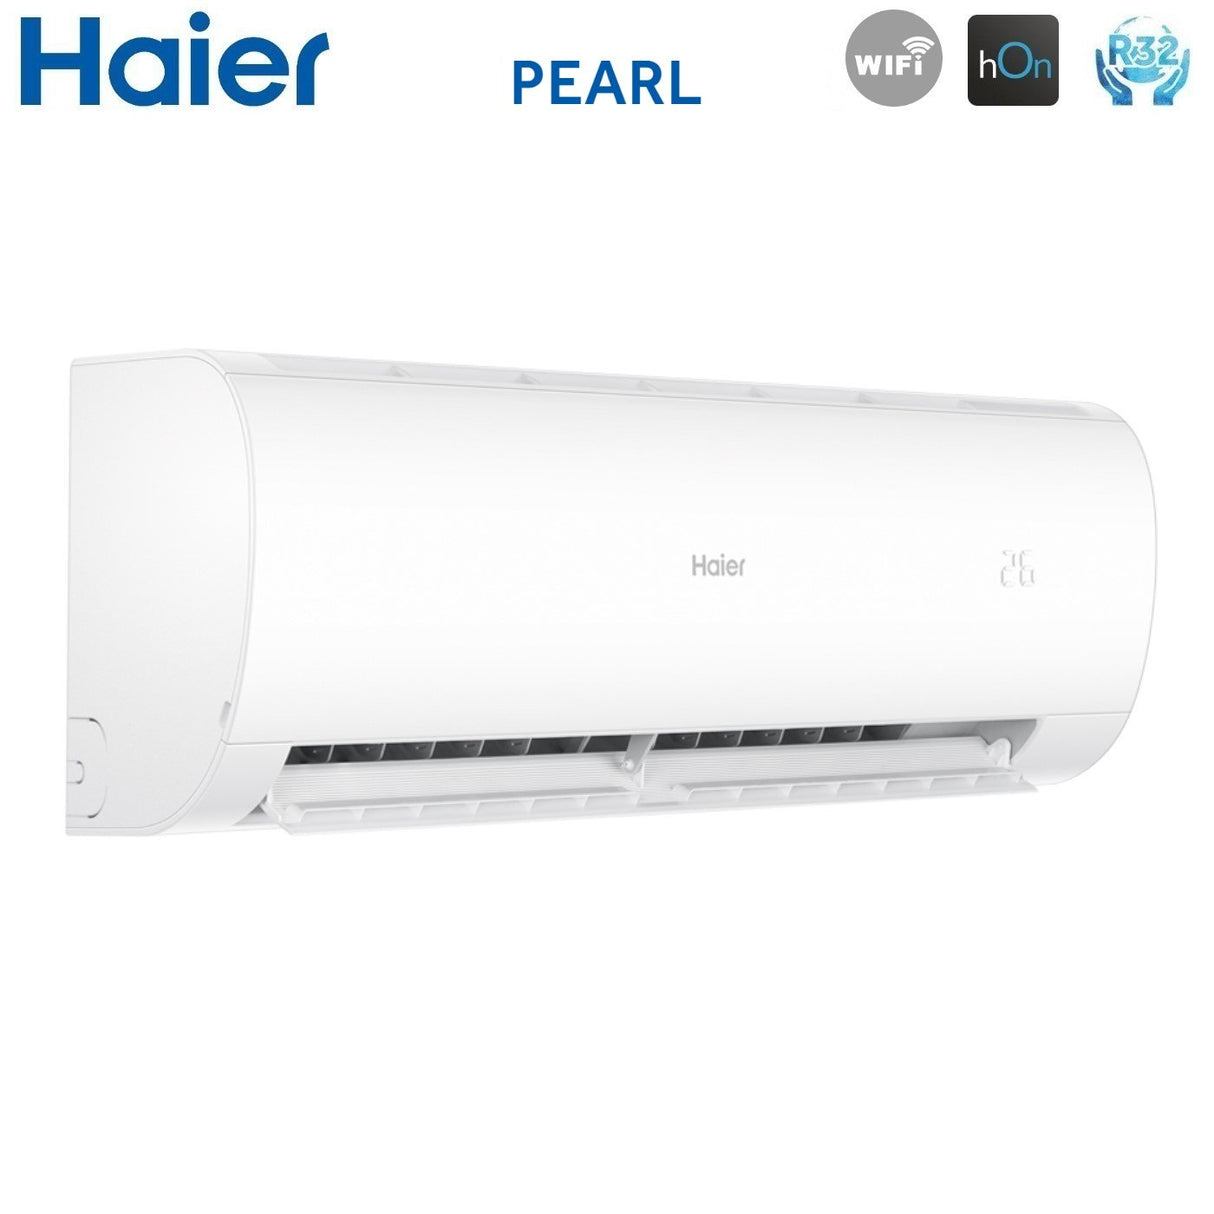 immagine-4-haier-climatizzatore-condizionatore-haier-trial-split-inverter-serie-pearl-7712-con-3u55s2sr3fa-r-32-wi-fi-integrato-7000700012000-novita